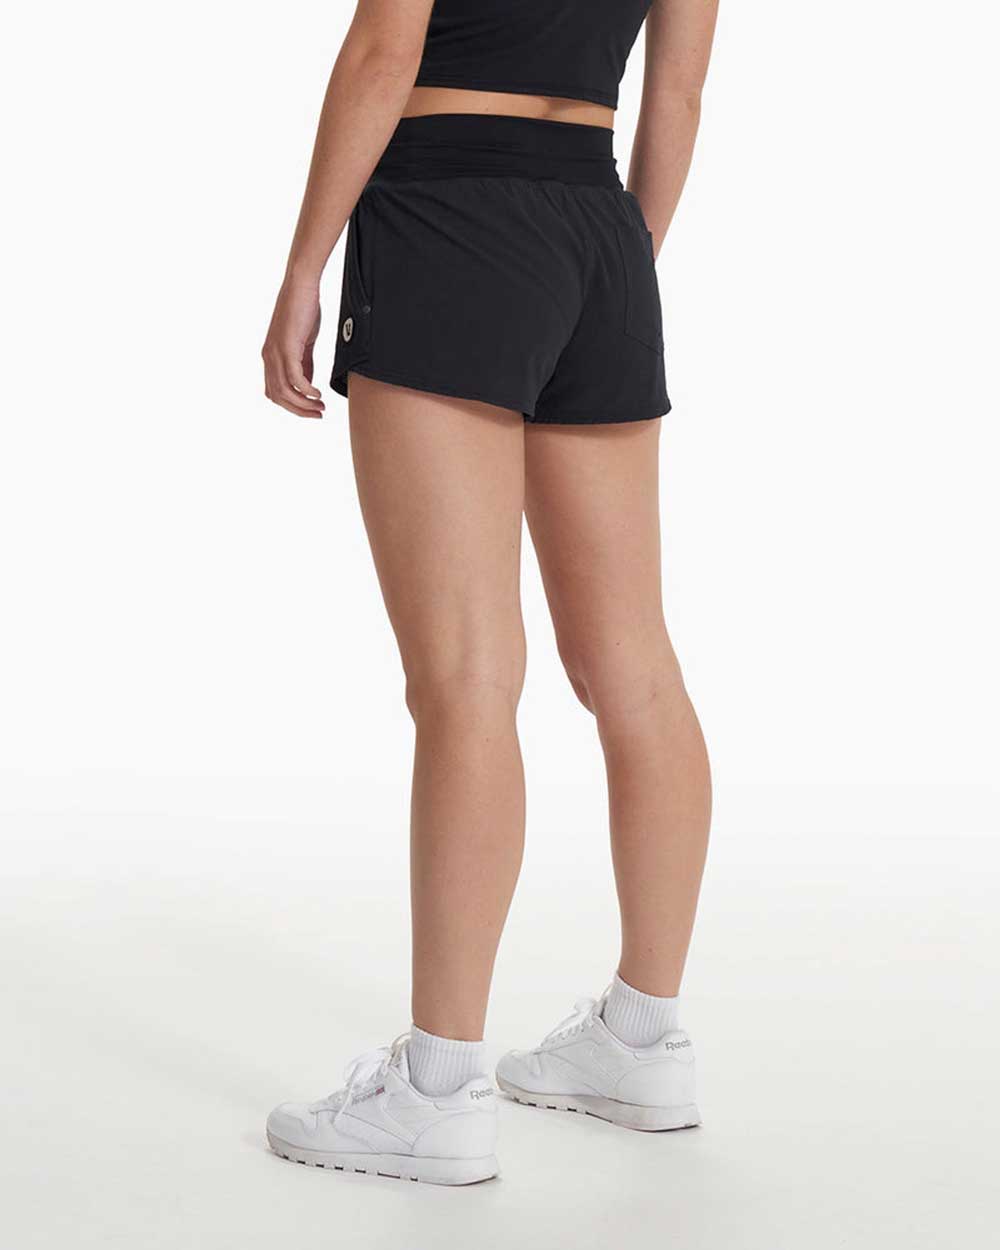 Vuori: Women's Seabreeze Short